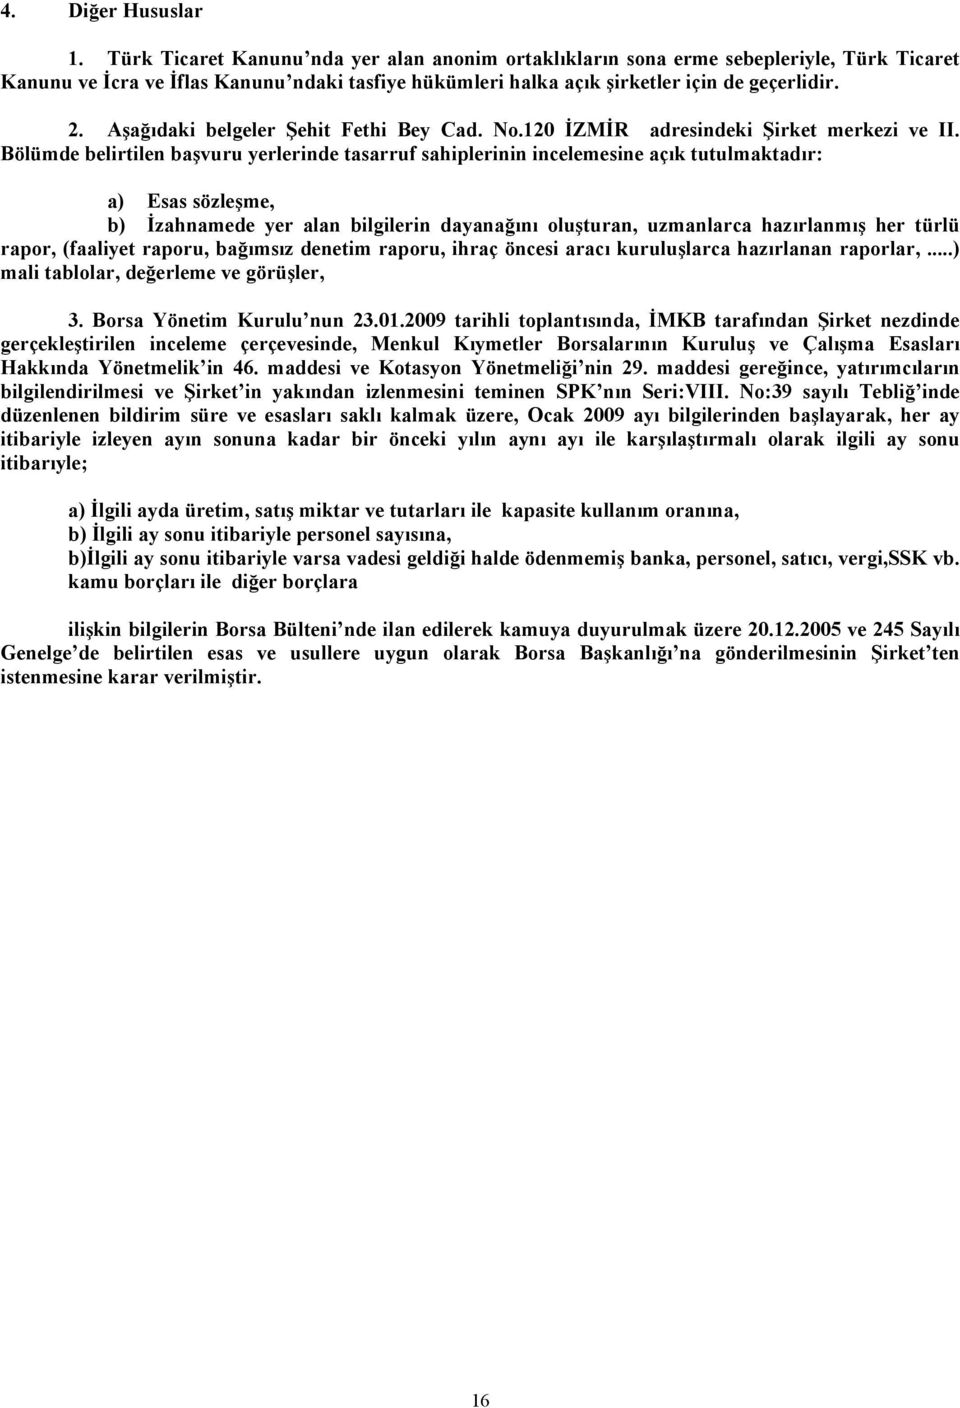 Aşağıdaki belgeler Şehit Fethi Bey Cad. No.120 İZMİR adresindeki Şirket merkezi ve II.